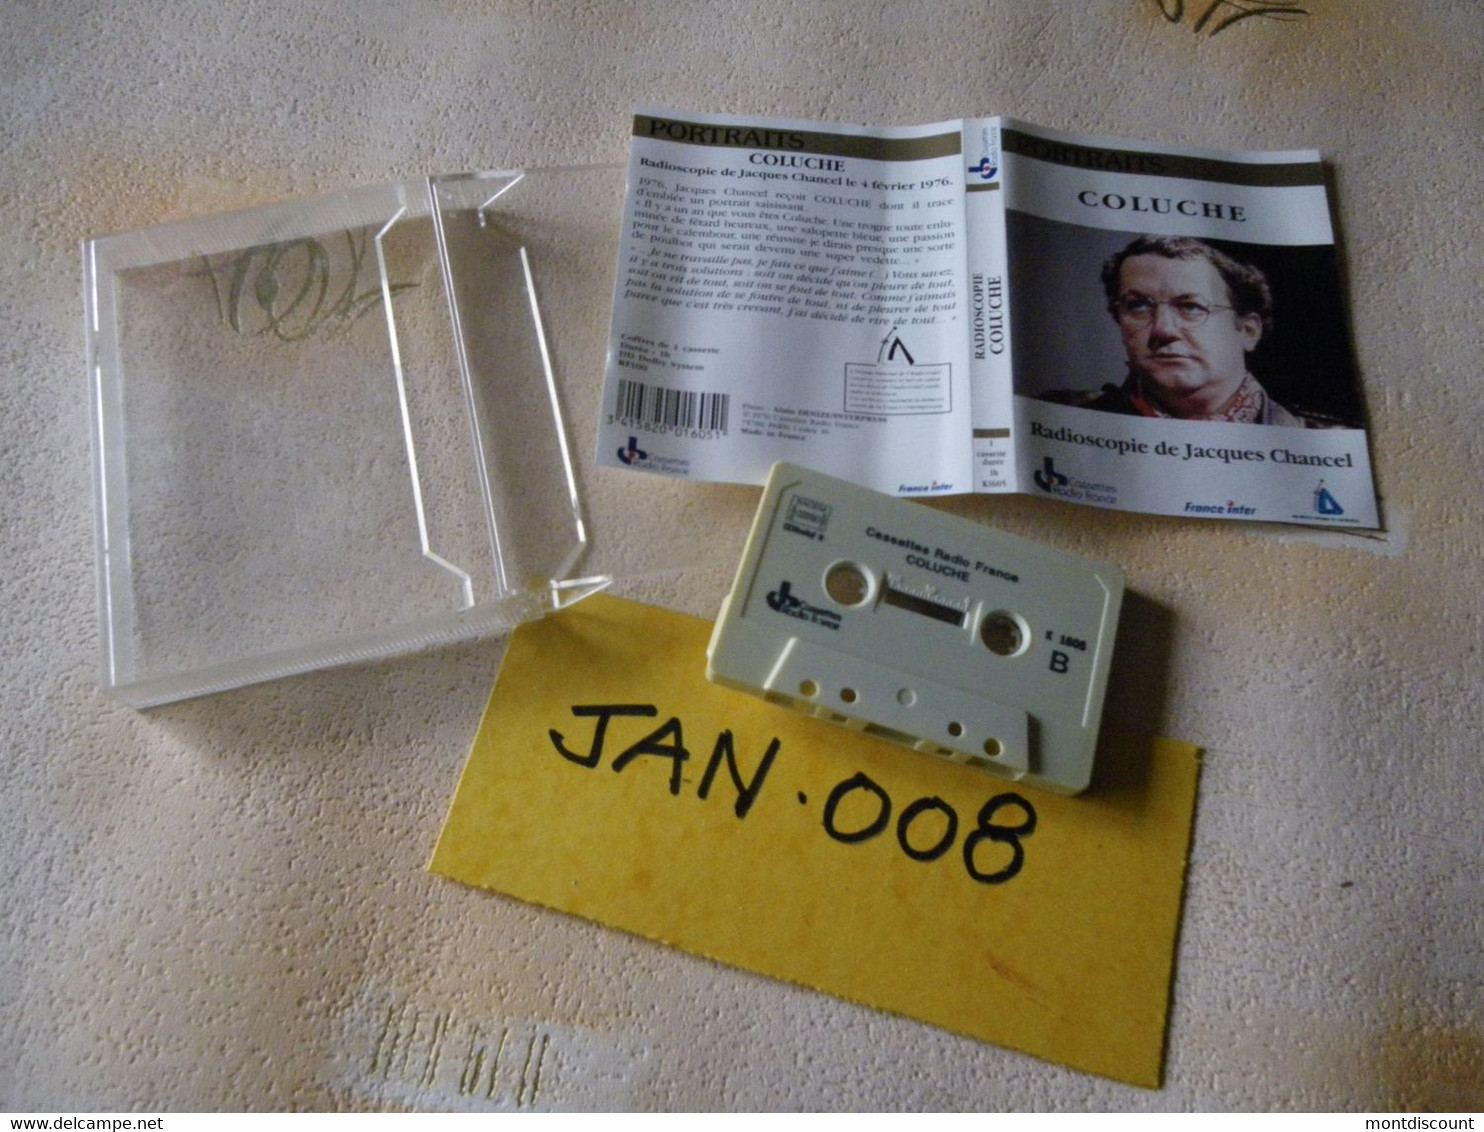 COLUCHE K7 AUDIO INTROUVABLE VOIR PHOTO...ET REGARDEZ LES AUTRES (PLUSIEURS) (JAN 008) - Cassettes Audio